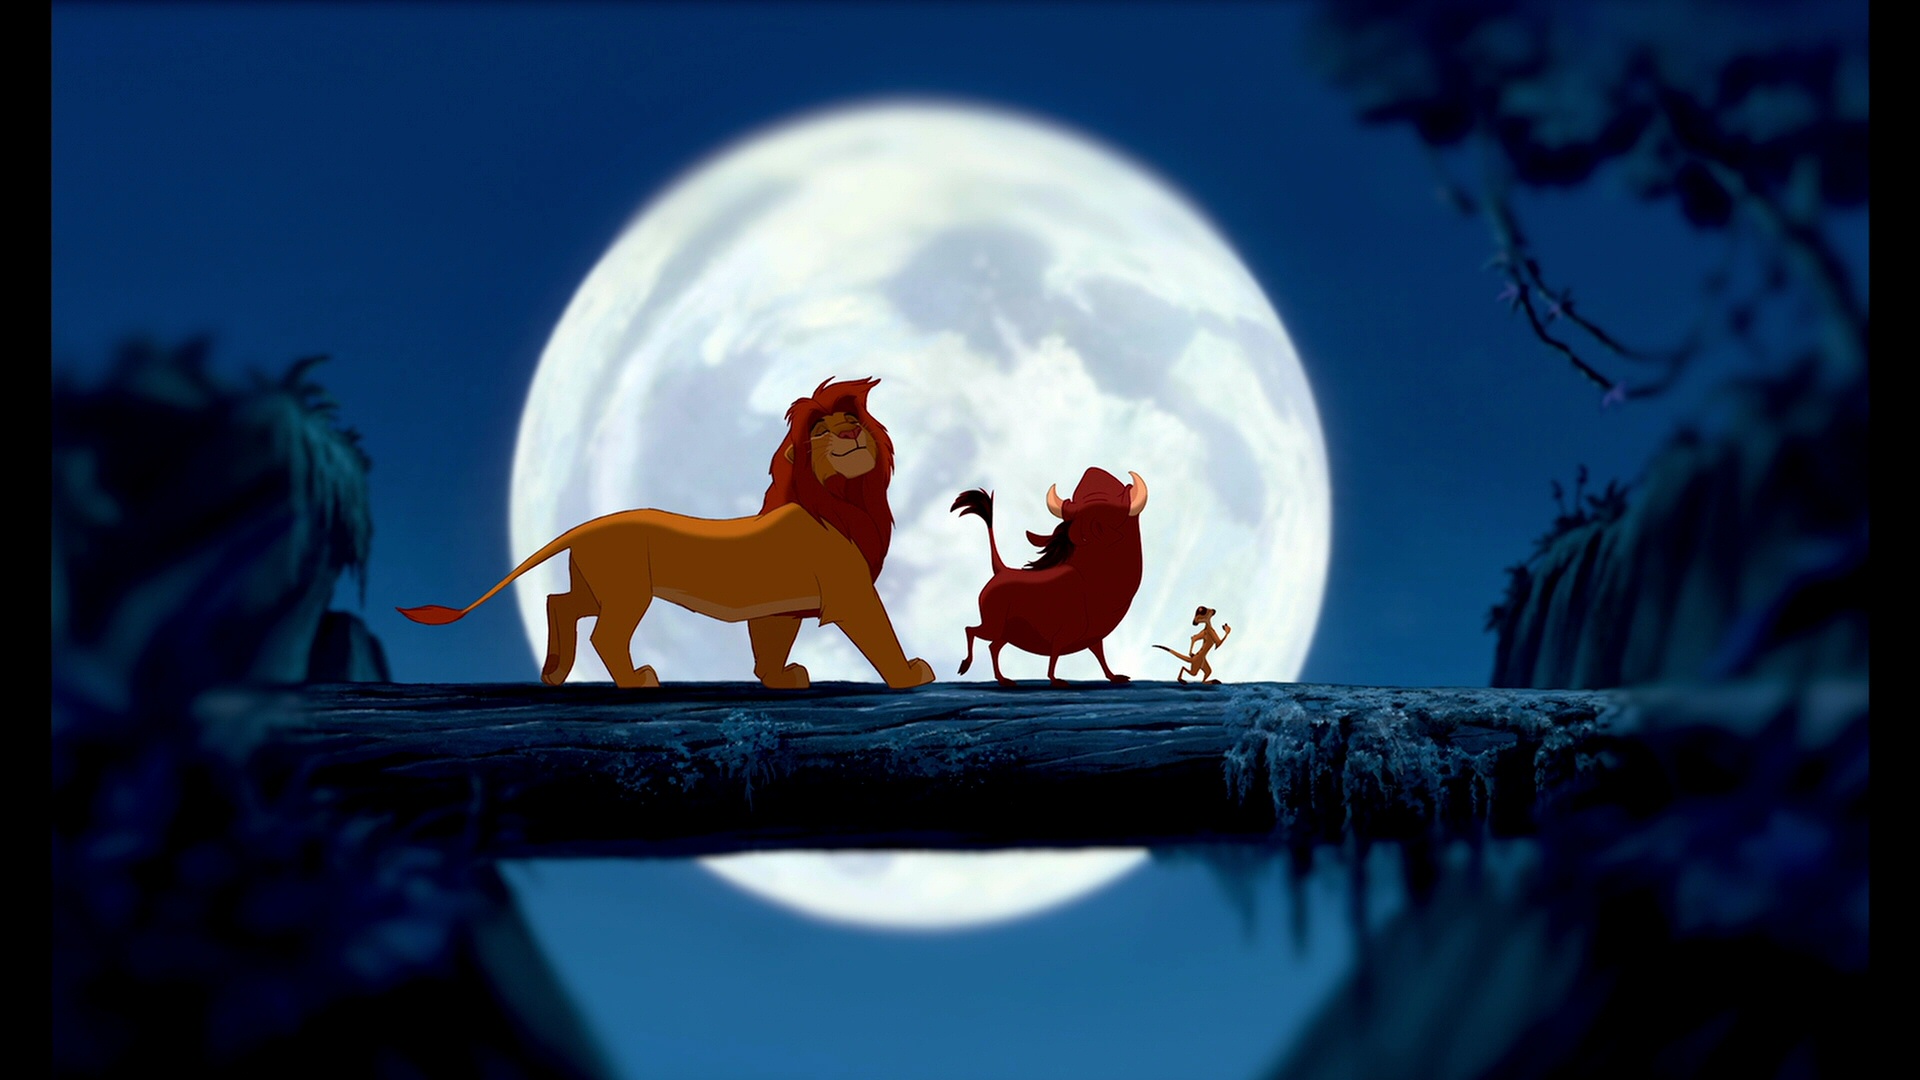 Lion King Wallpaper Disney HD Widescreen Desktop Backgrounds